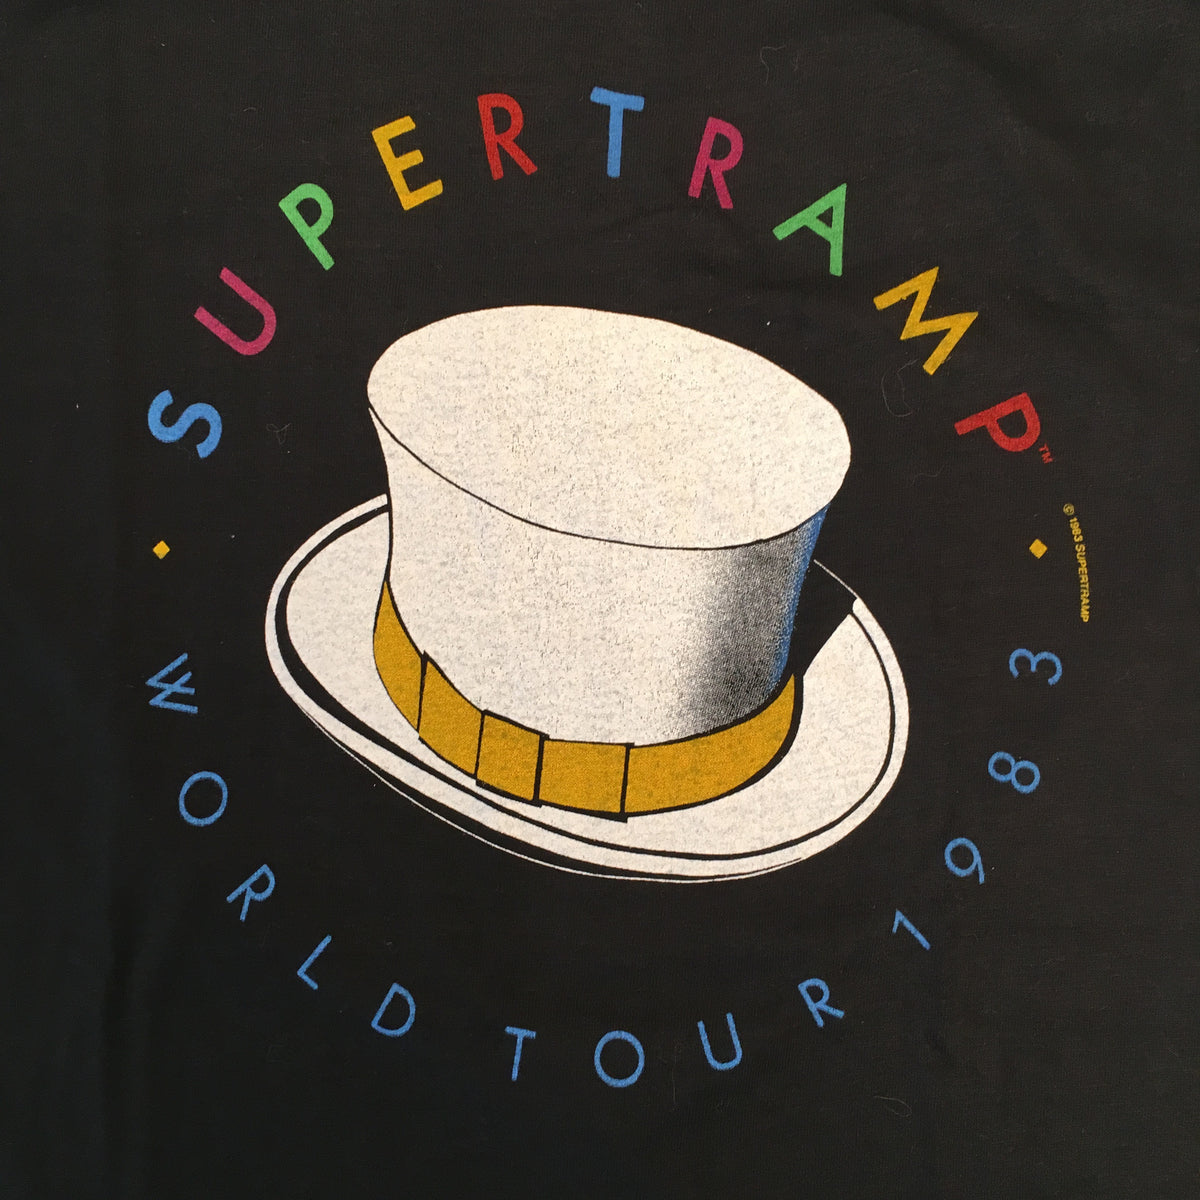 Vintage Supertramp &quot;World Tour 83&quot; T-Shirt - jointcustodydc